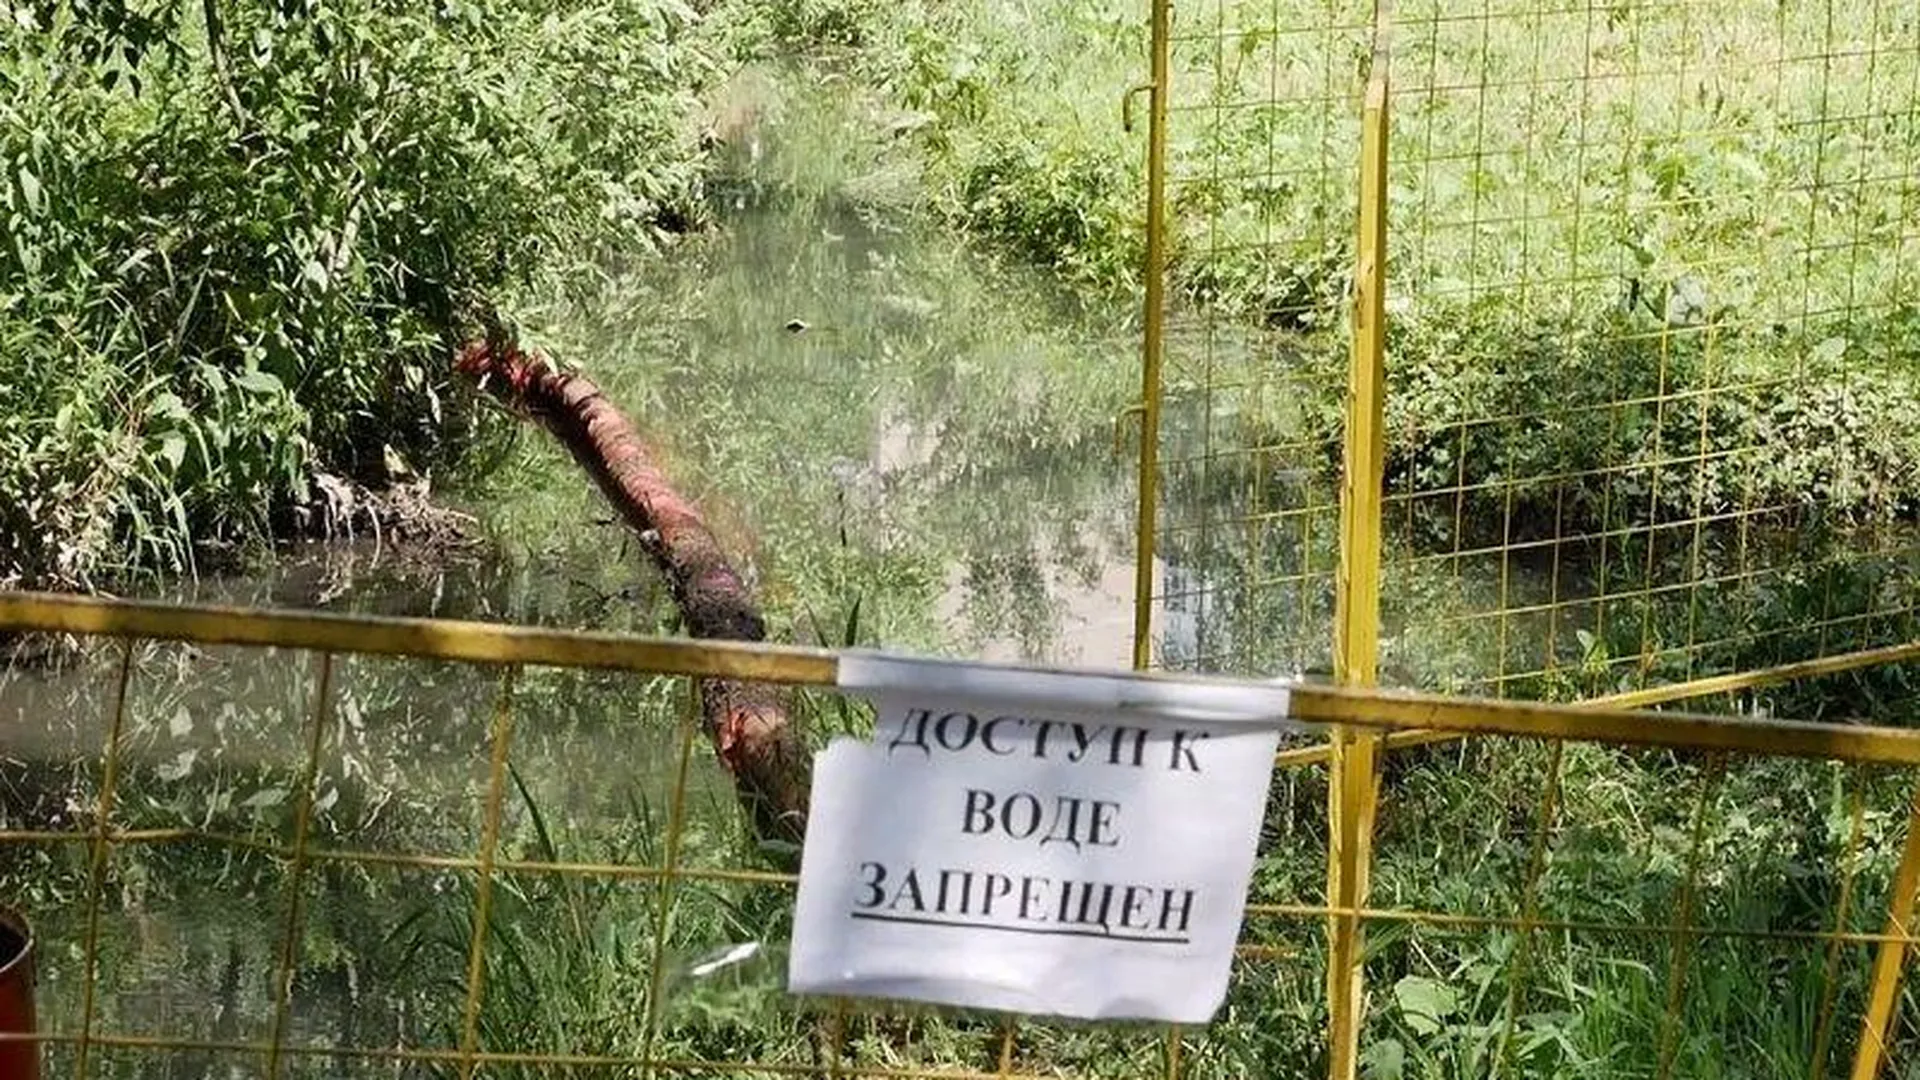 Сотрудники Лобненского водоканала обнаружили колодец, в который злоумышленники сбросили химвещество, попавшее в реку